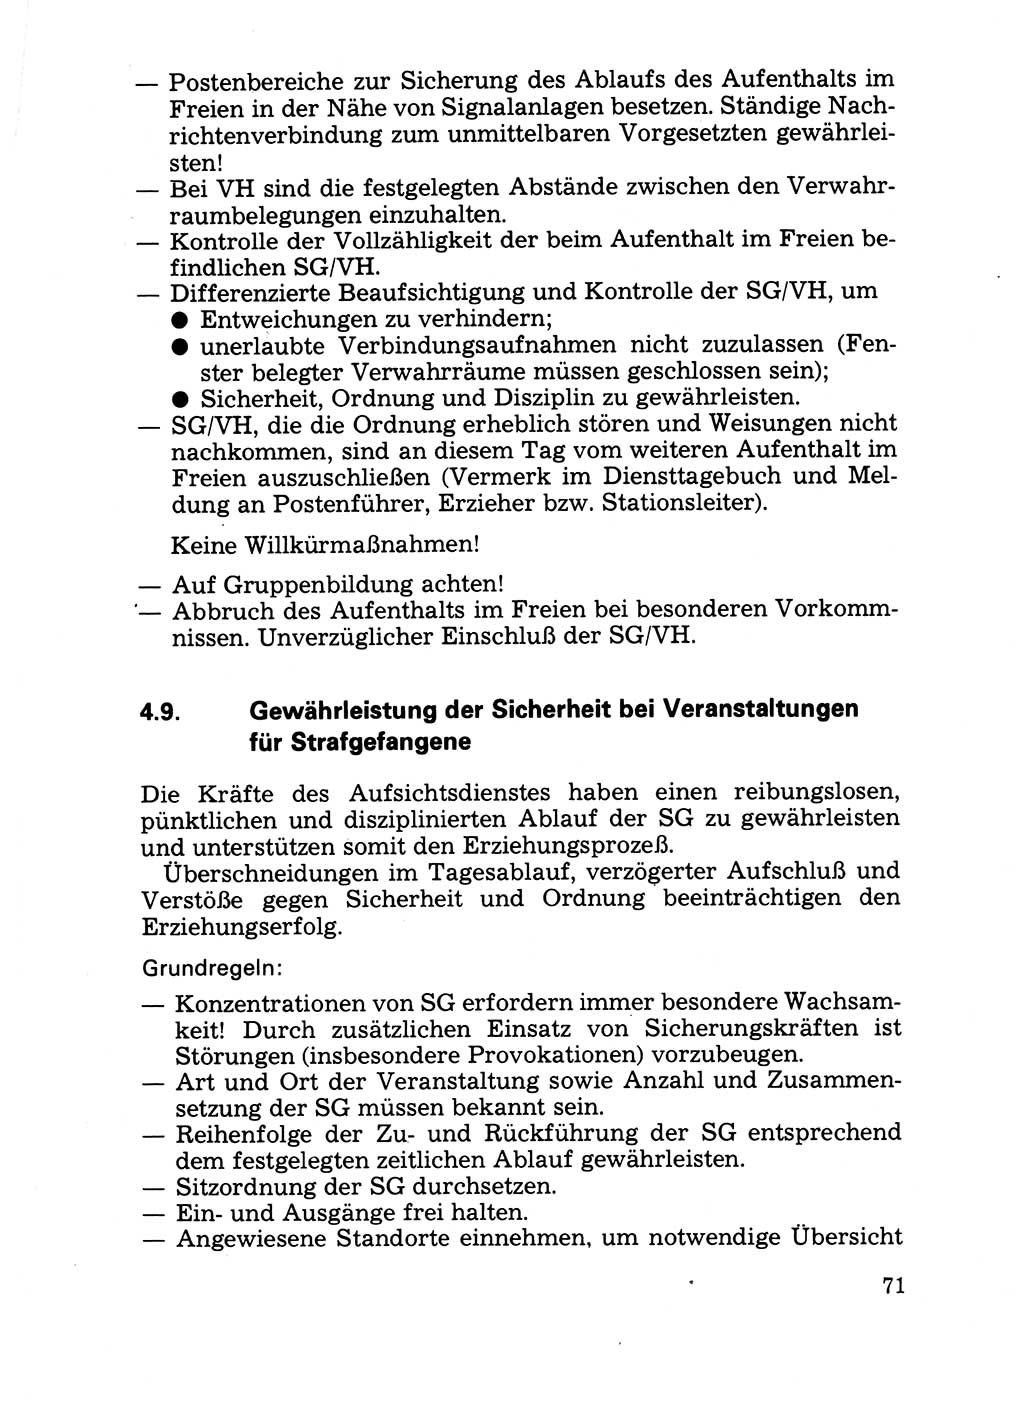 Handbuch für operative Dienste, Abteilung Strafvollzug (SV) [Ministerium des Innern (MdI) Deutsche Demokratische Republik (DDR)] 1981, Seite 71 (Hb. op. D. Abt. SV MdI DDR 1981, S. 71)